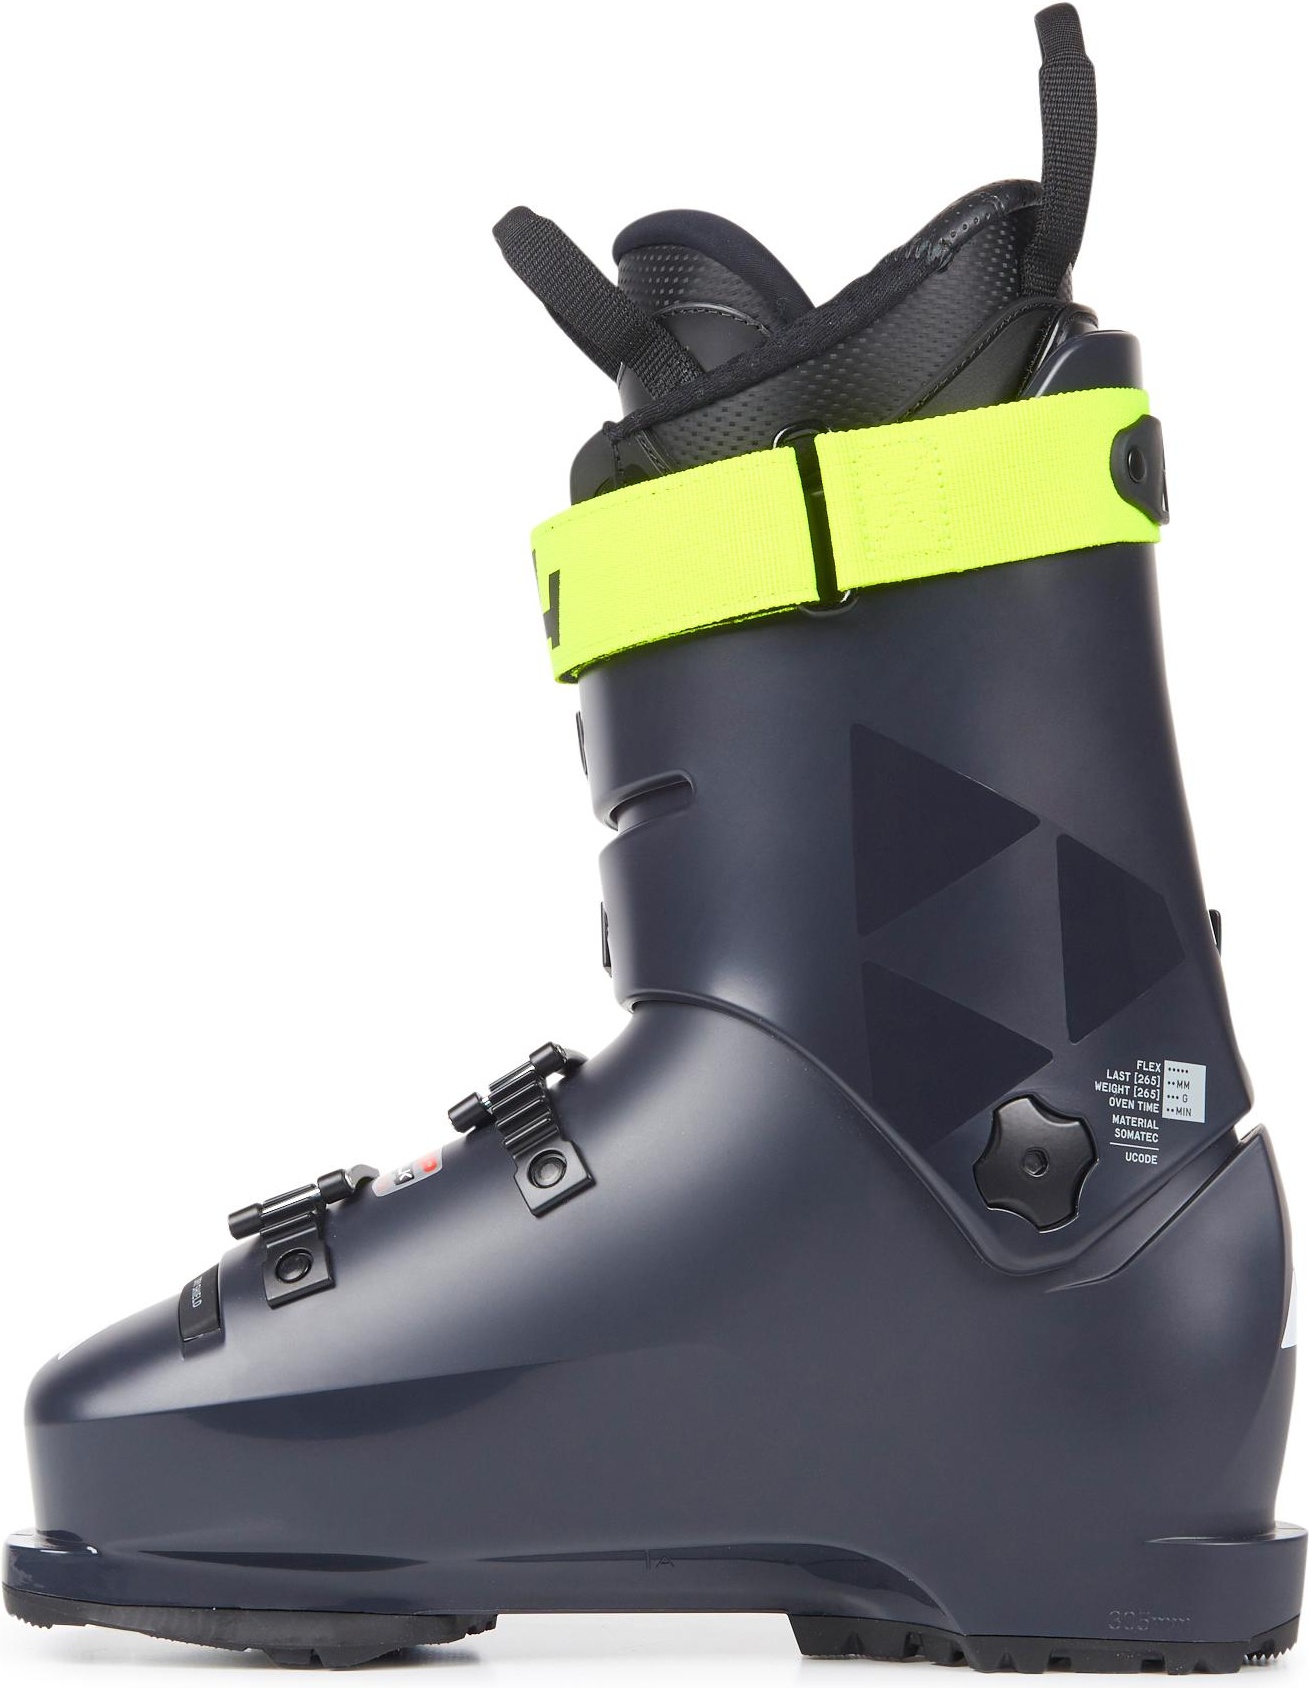 Горнолыжные ботинки Fischer Rc4 The Curv One 110 Vacuum Walk 2021, darkgrey/darkgrey, 27.5